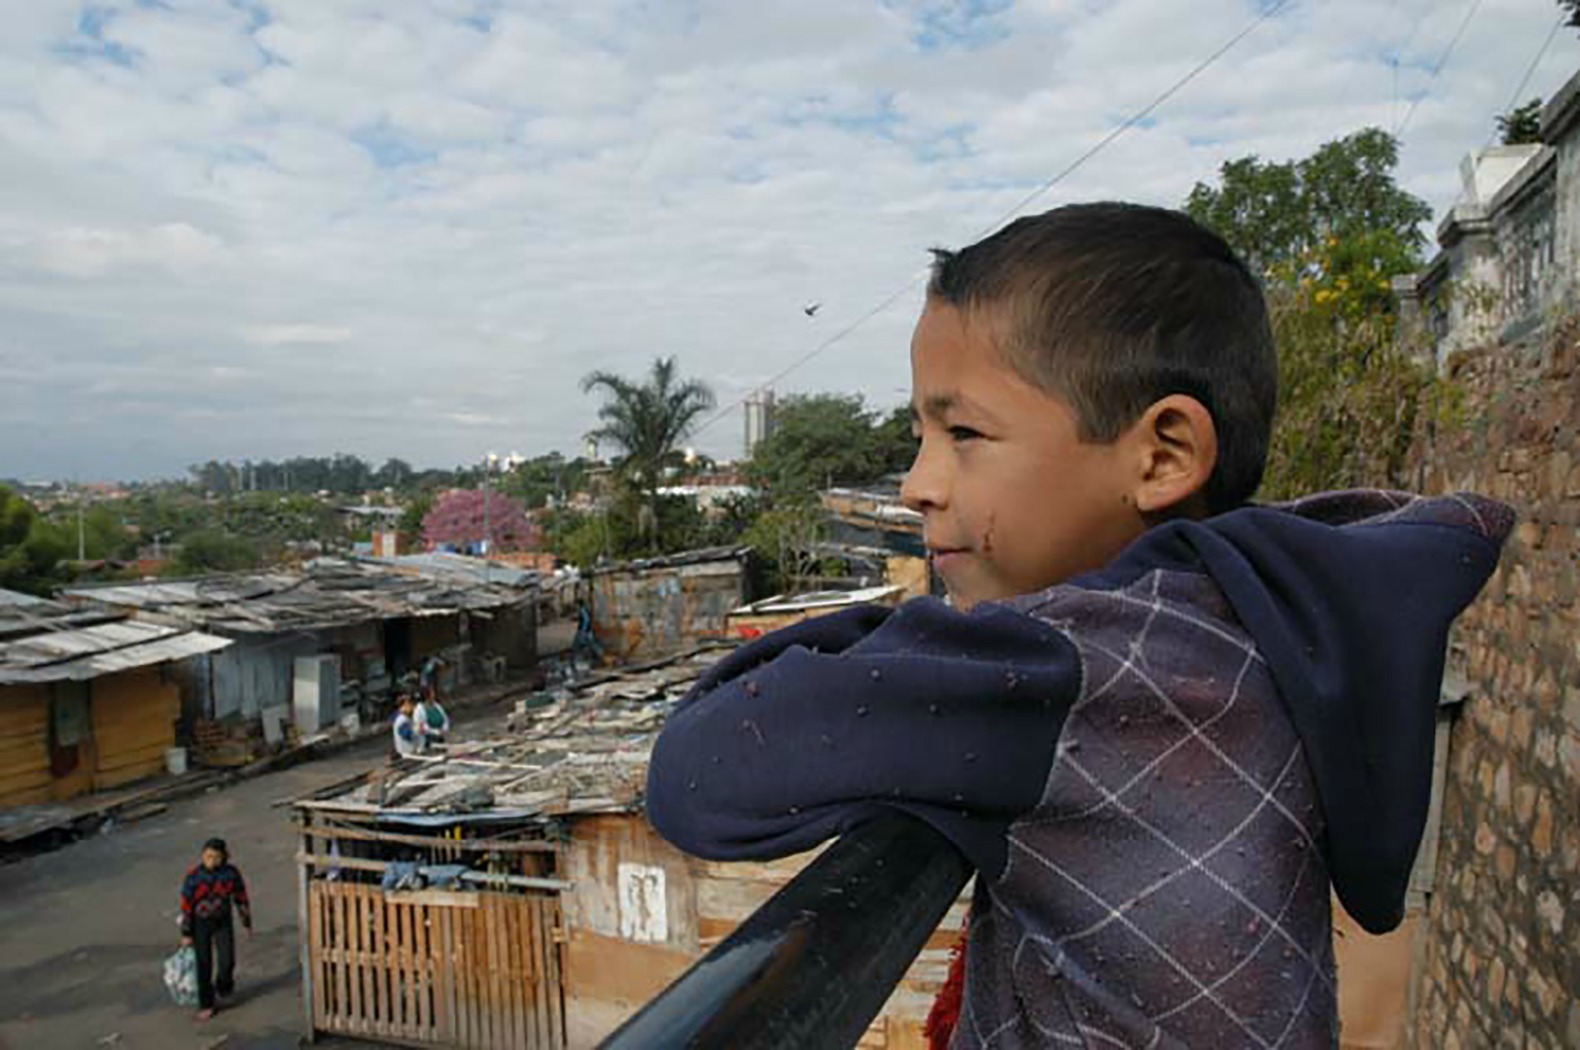 850'000 personnes vivent sous le seuil de pauvreté au Paraguay. (Photo: J.C. Gerez)